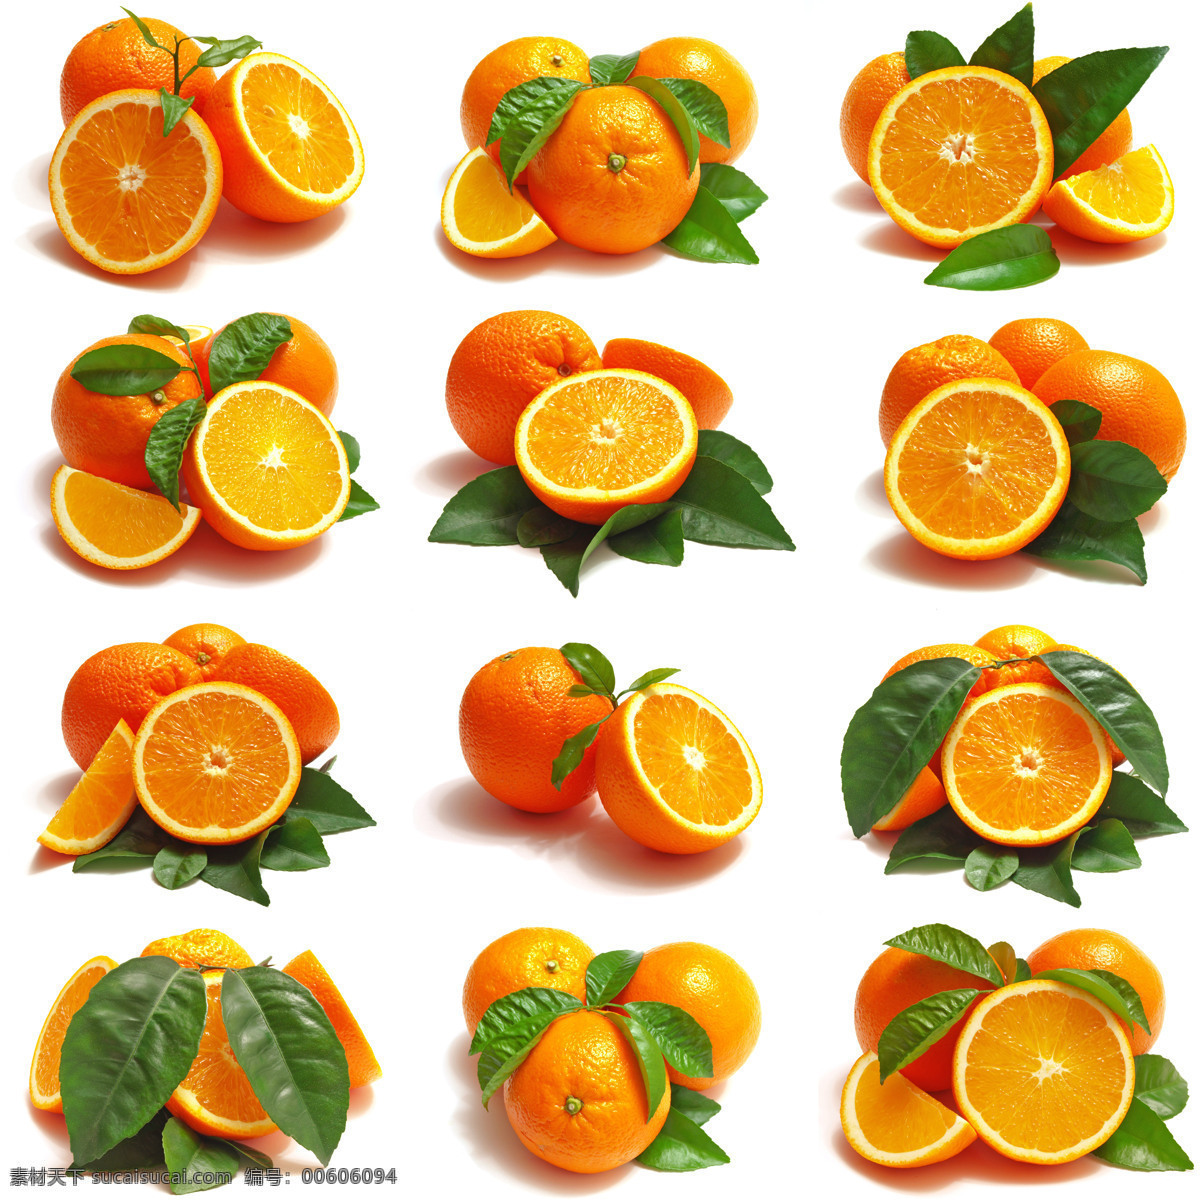 高清橙子摄影 橙子 橙子摄影 柠檬 食物 美食 水果 水果广告 水果素材 水果蔬菜 餐饮美食 白色